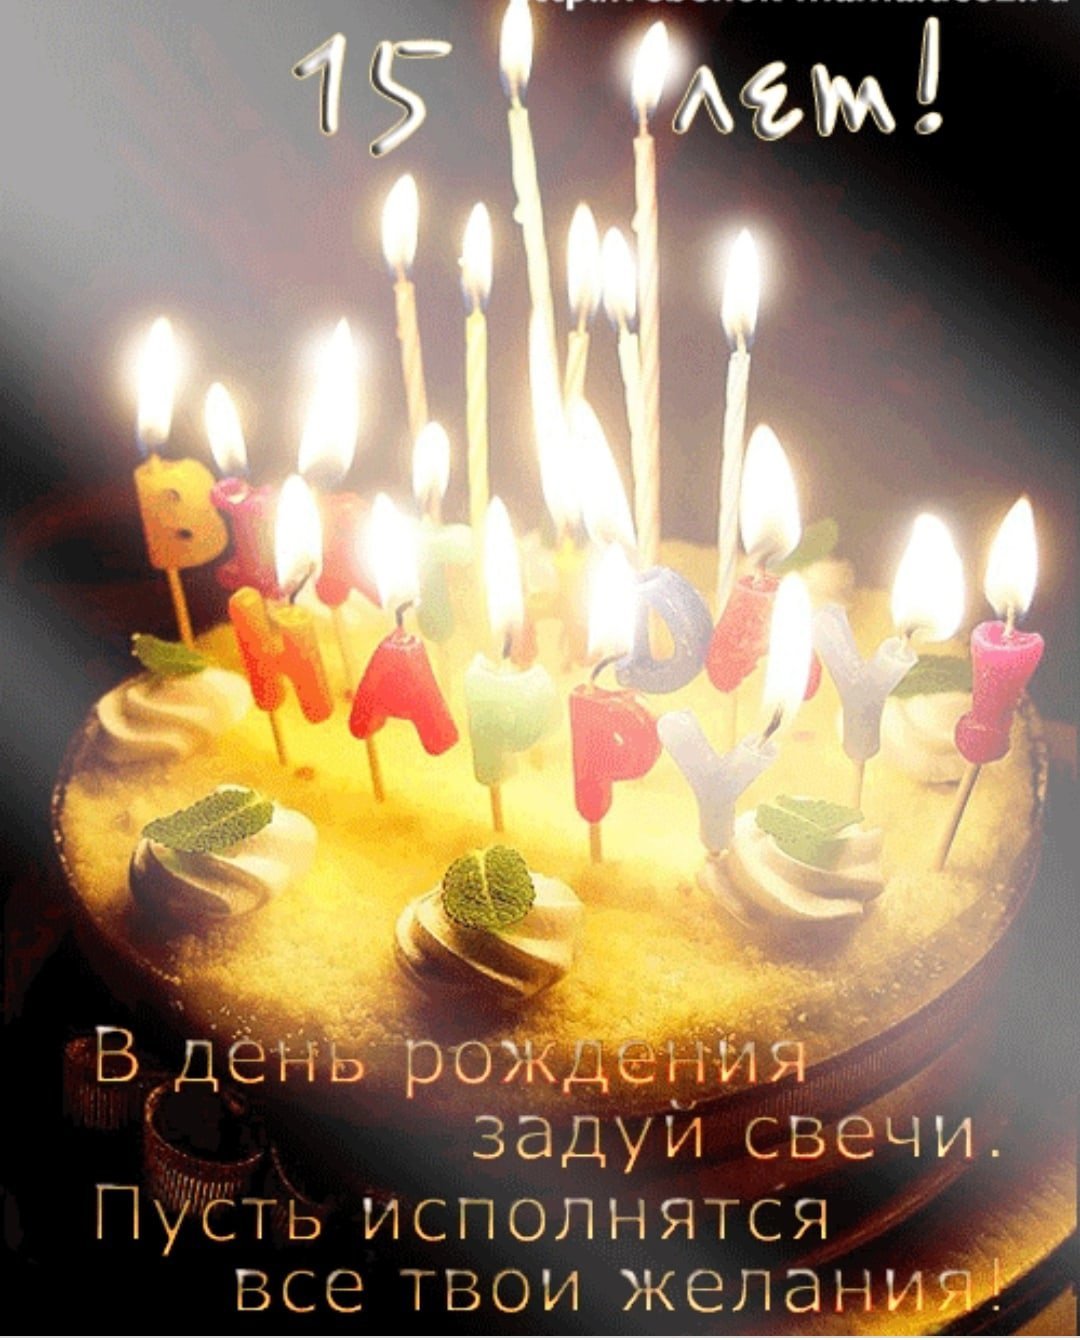 Поздравление с днем рождения сына 15 летием. Поздравления с днём рождения 15 лет. Торт со свечками. Торт со свечами с днем рождения картинки. Поздравления с днём рождения 15 лет девочке.